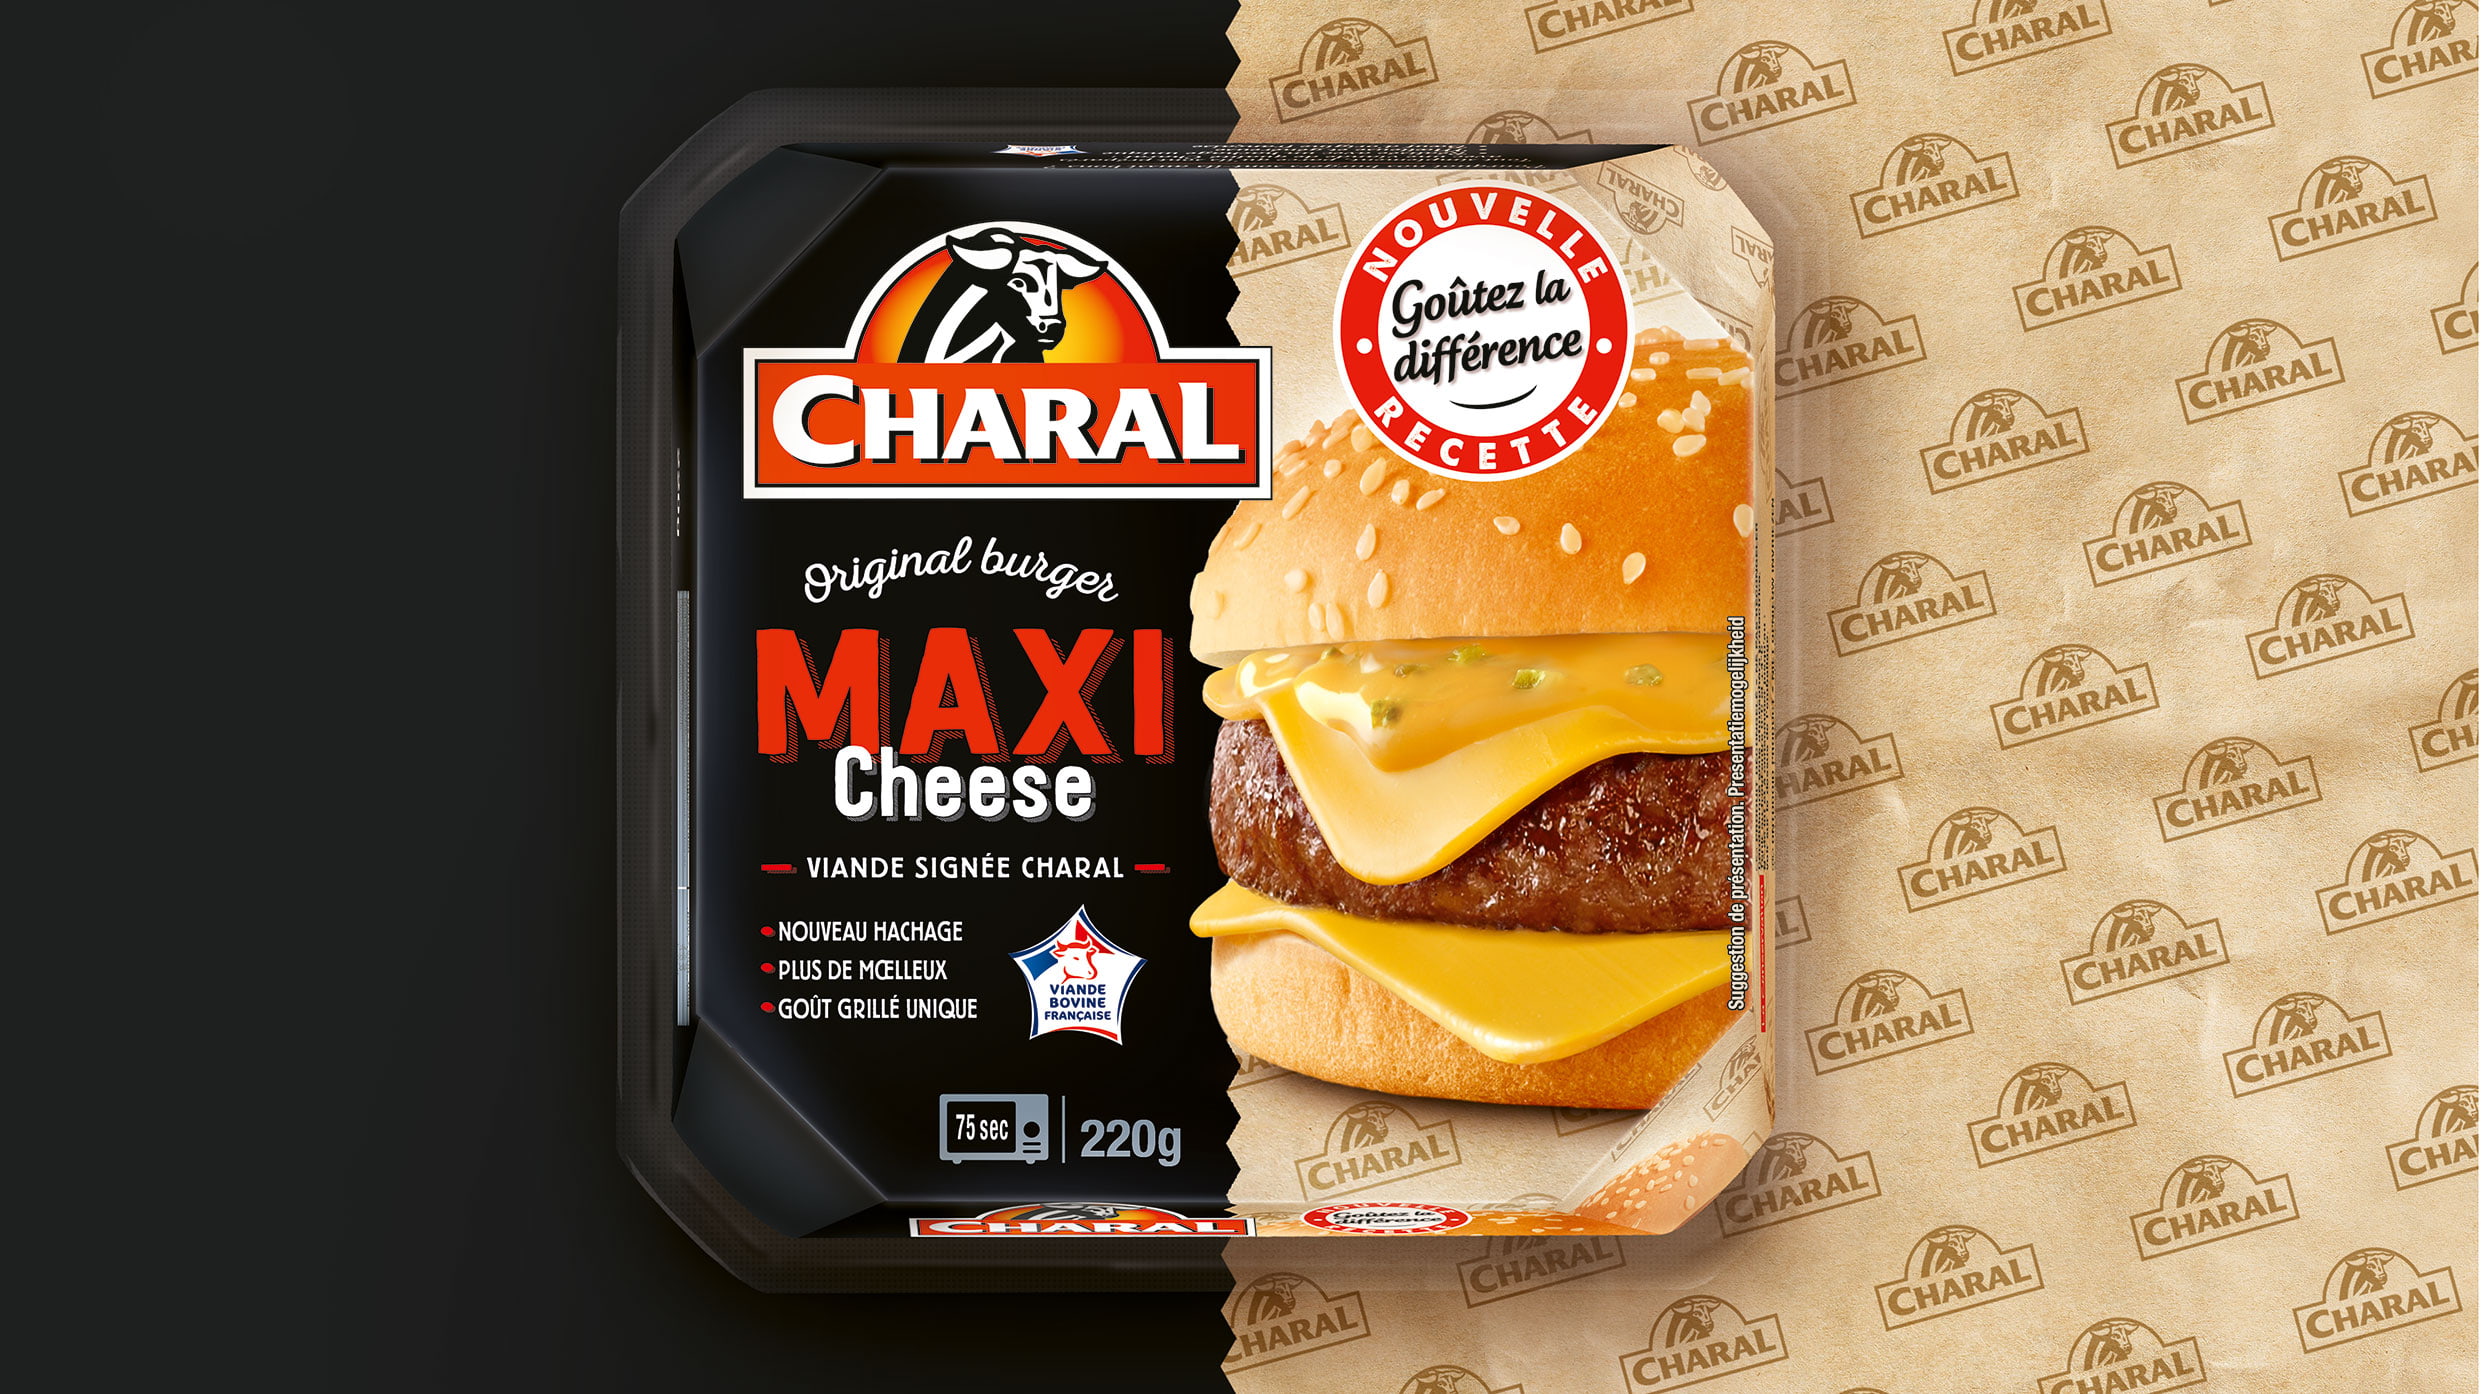 Charal burger